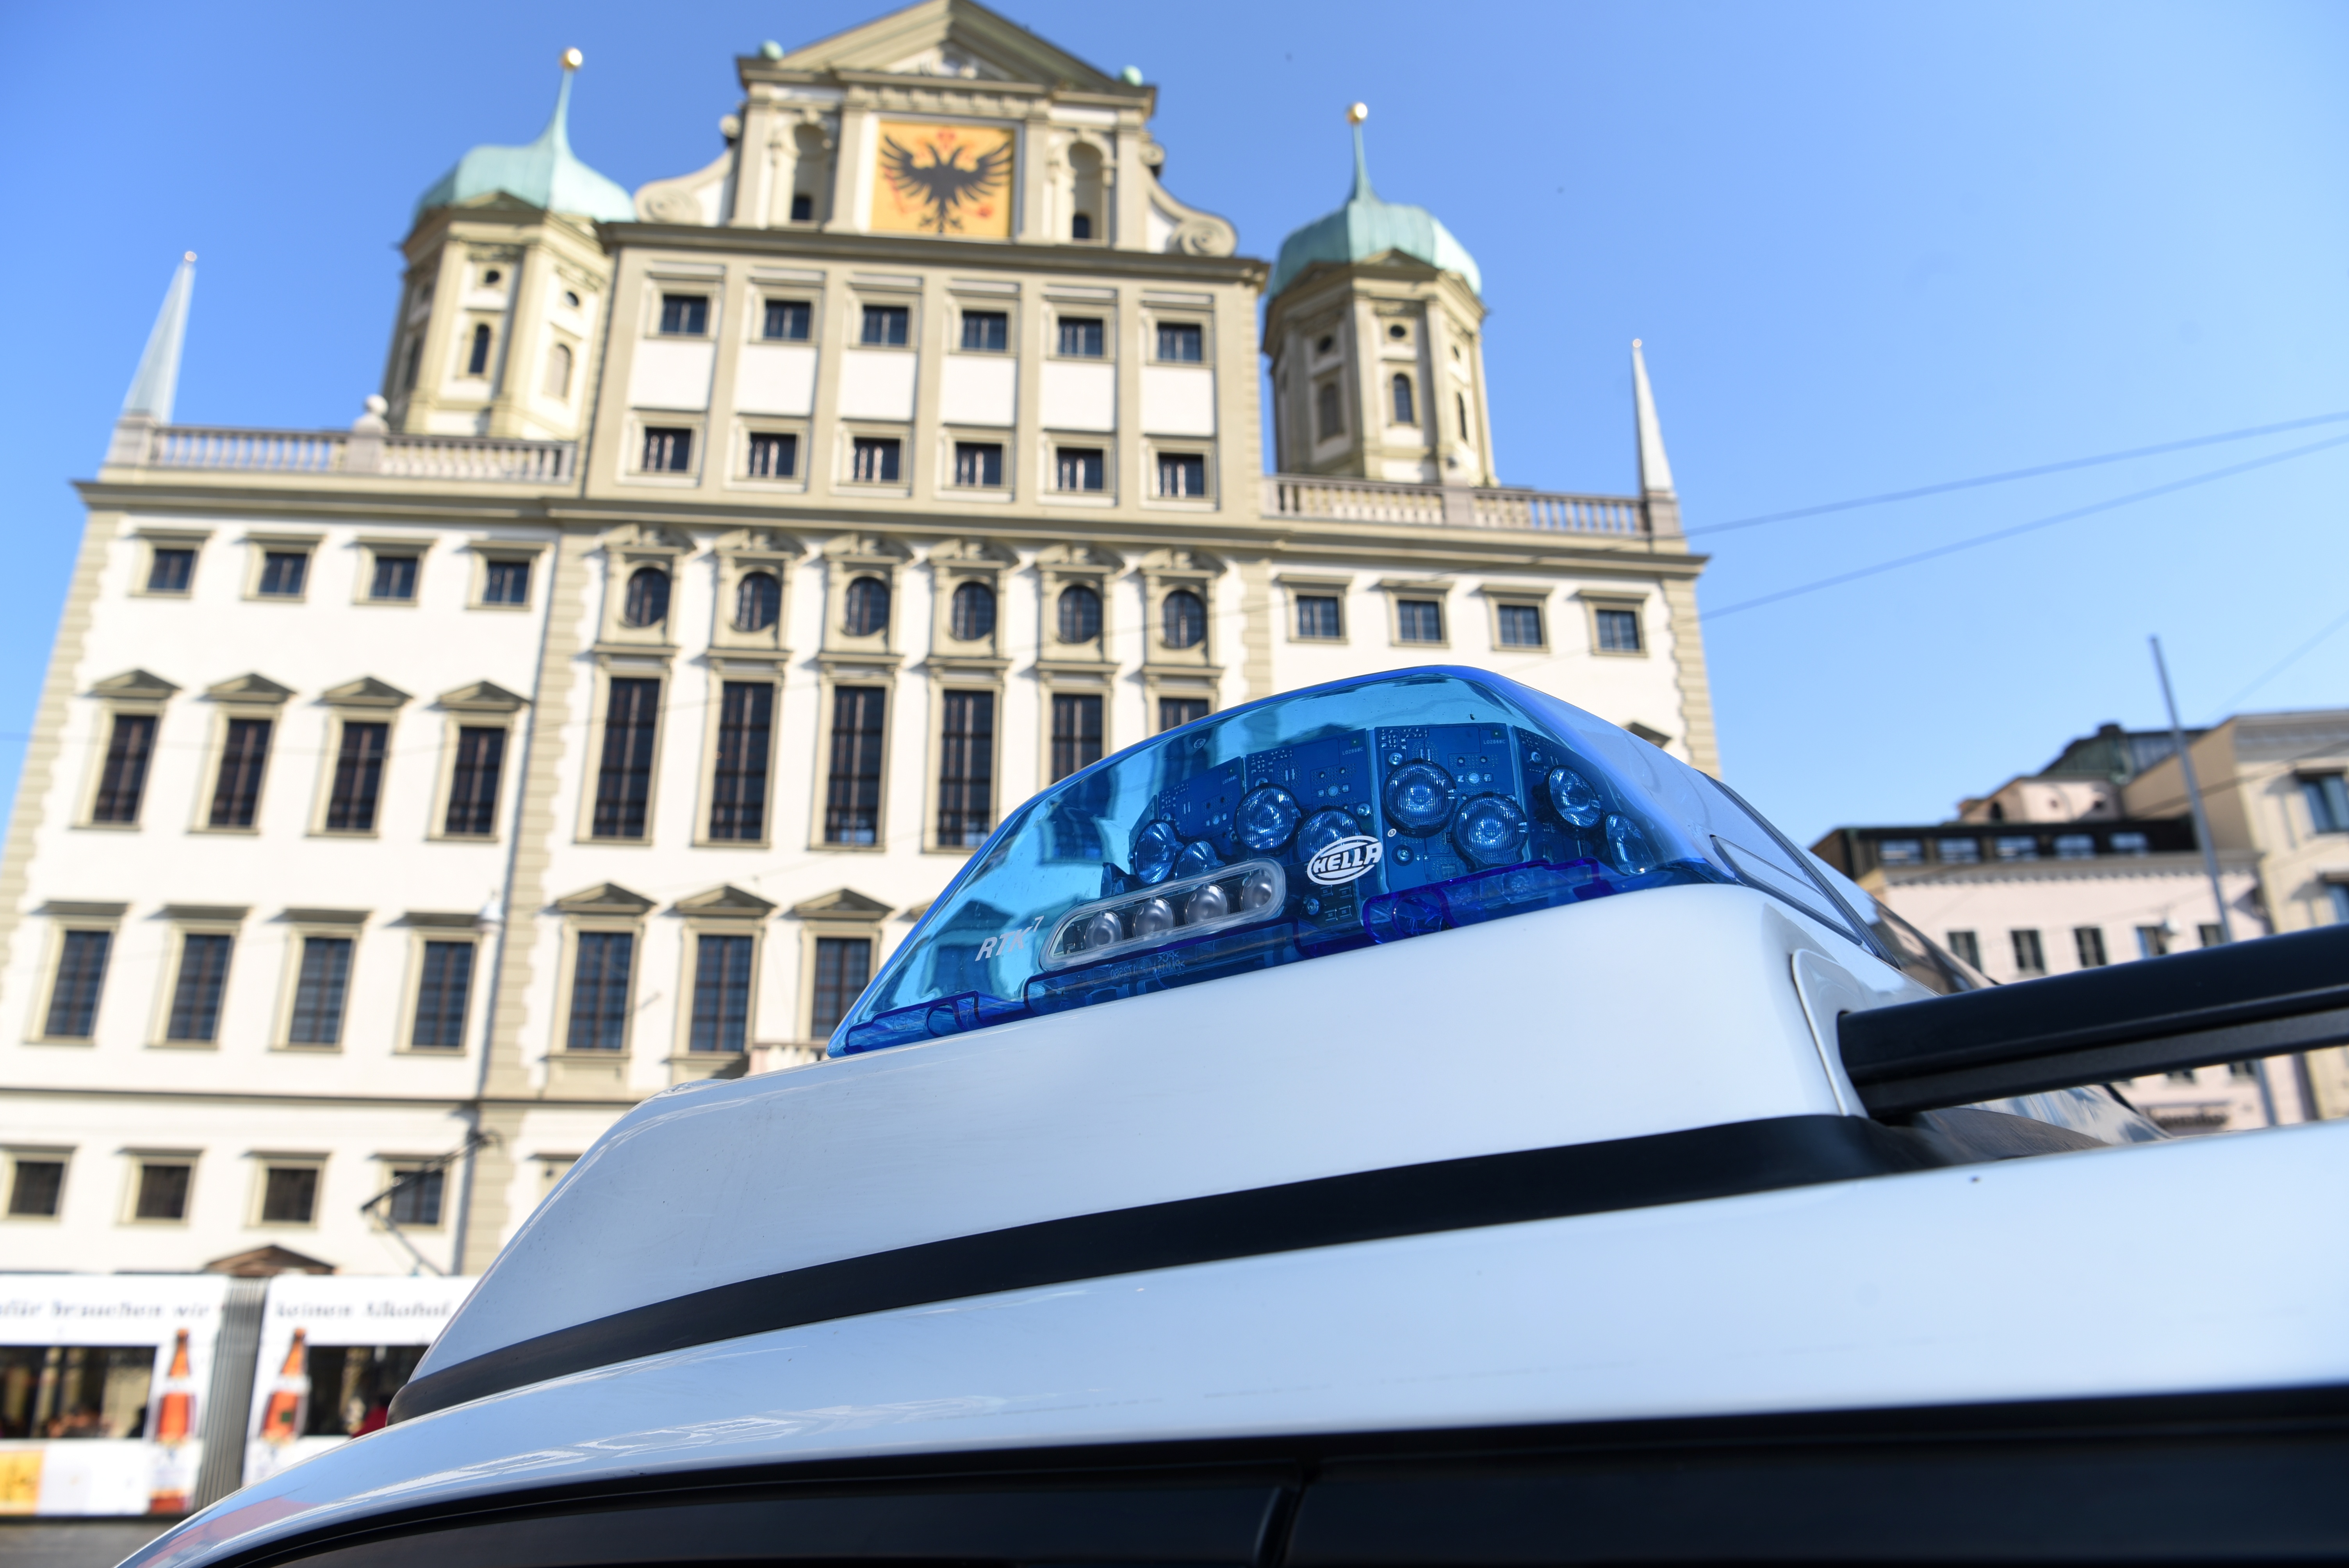 Vor dem Augsburger Rathaus ist im Vordergrund ein Blaulicht auf dem Dach eines Polizeiautos zu sehen